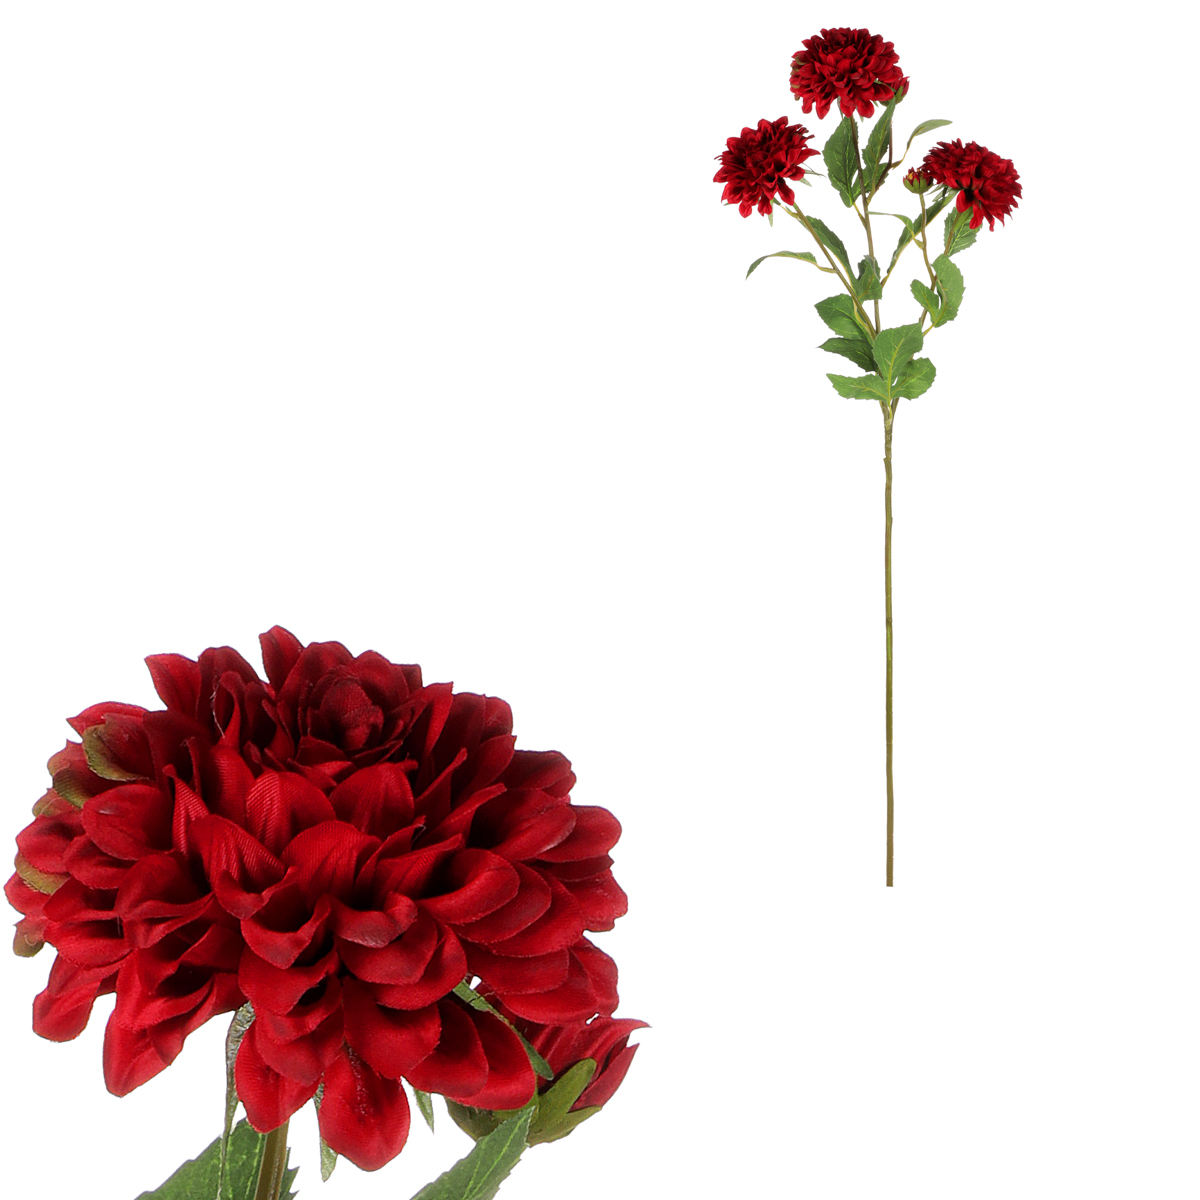 Jiřina - umělá květina, 5 květů, tmavě červená barva.